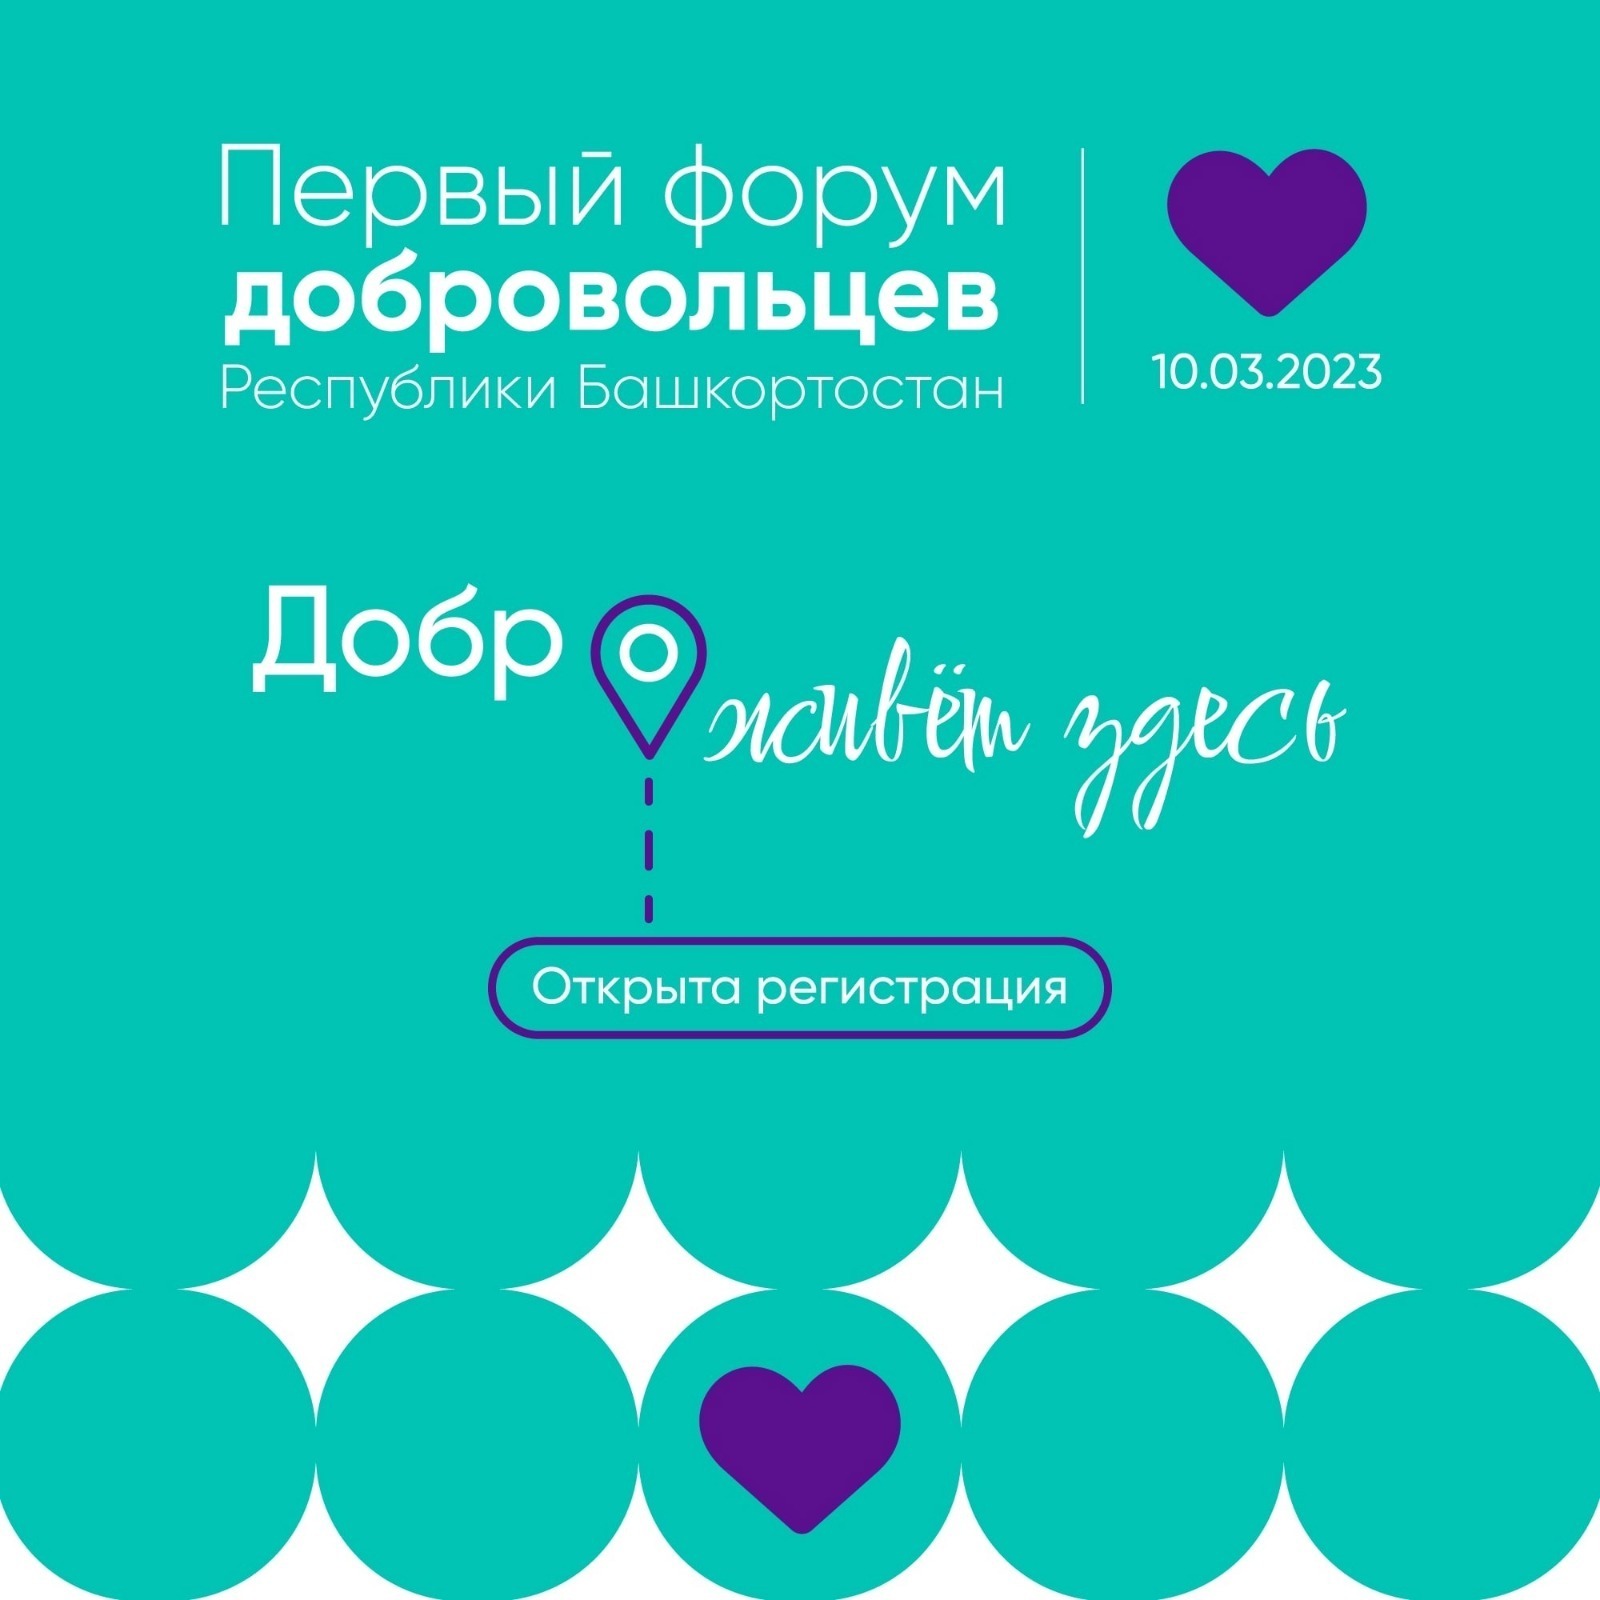 В Уфе пройдет Первый форум добровольцев Башкортостана